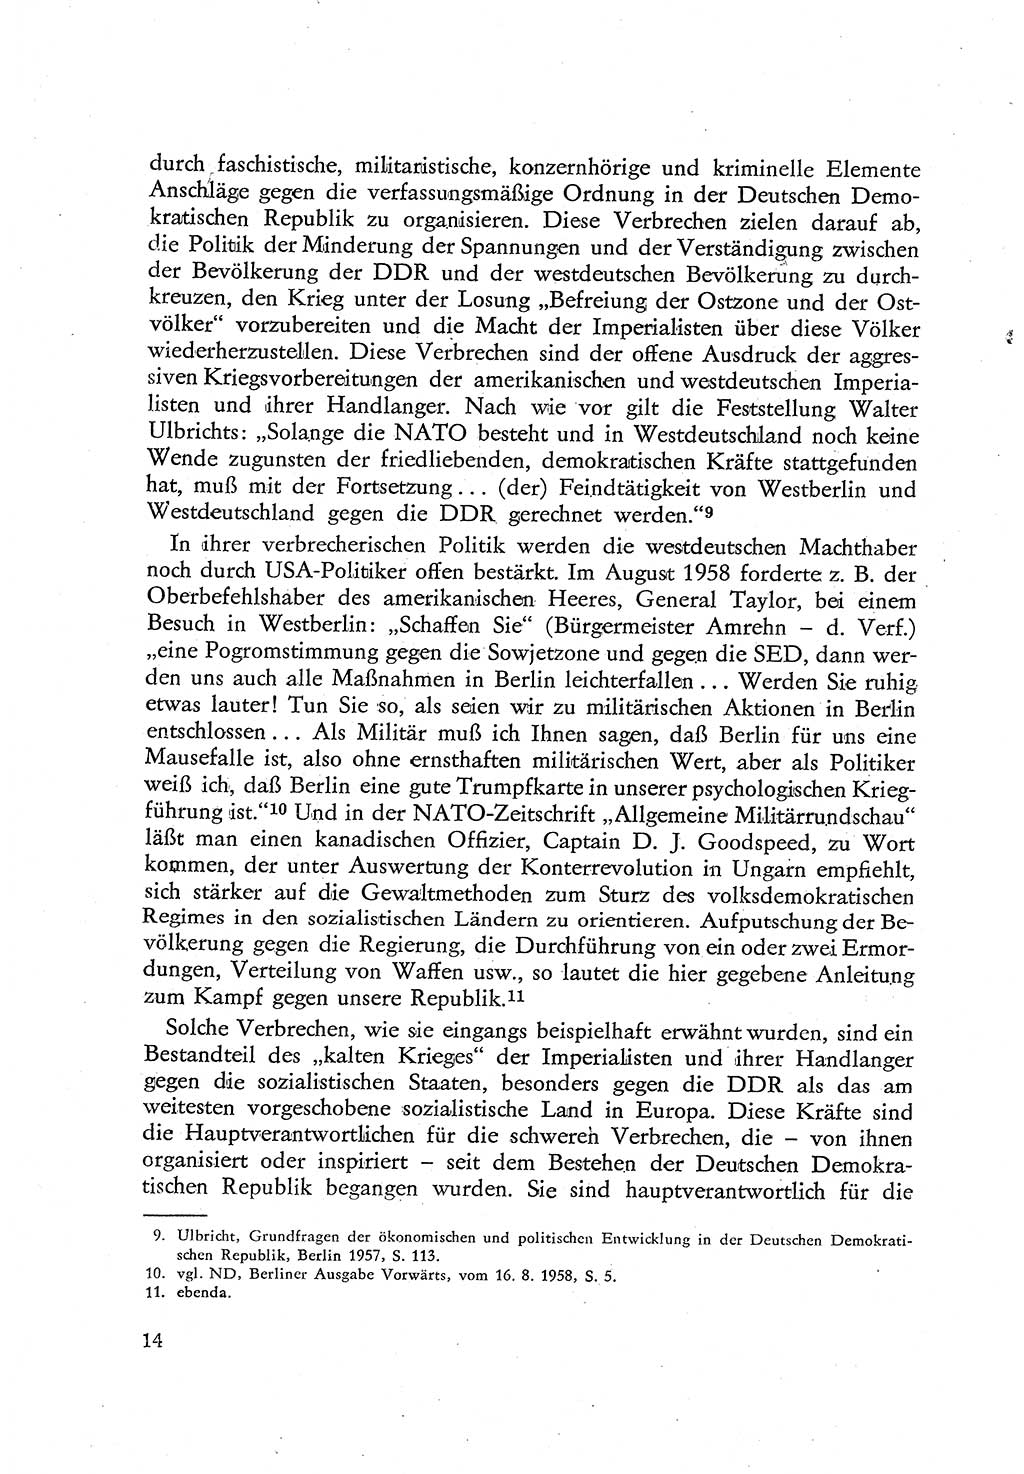 Beiträge zum Strafrecht [Deutsche Demokratische Republik (DDR)], Staatsverbrechen 1959, Seite 14 (Beitr. Strafr. DDR St.-Verbr. 1959, S. 14)